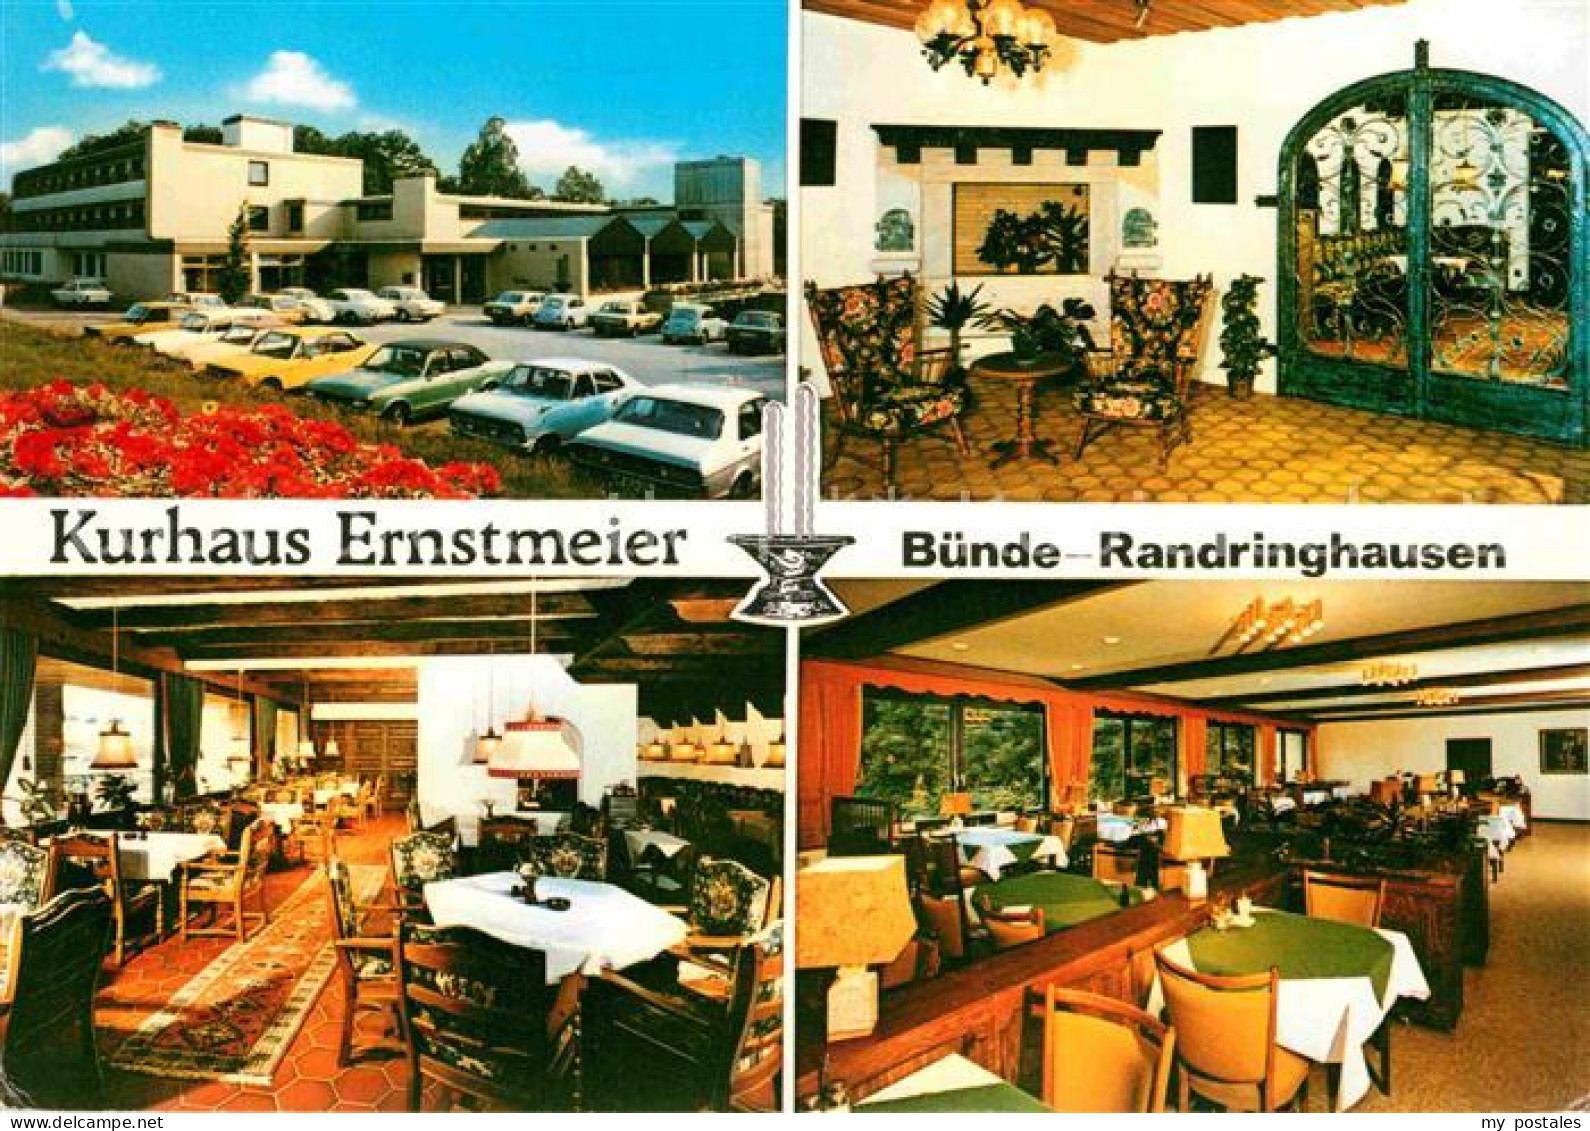 72815278 Randringhausen Bad Kurhaus Ernstmeier  Randringhausen Bad - Bünde